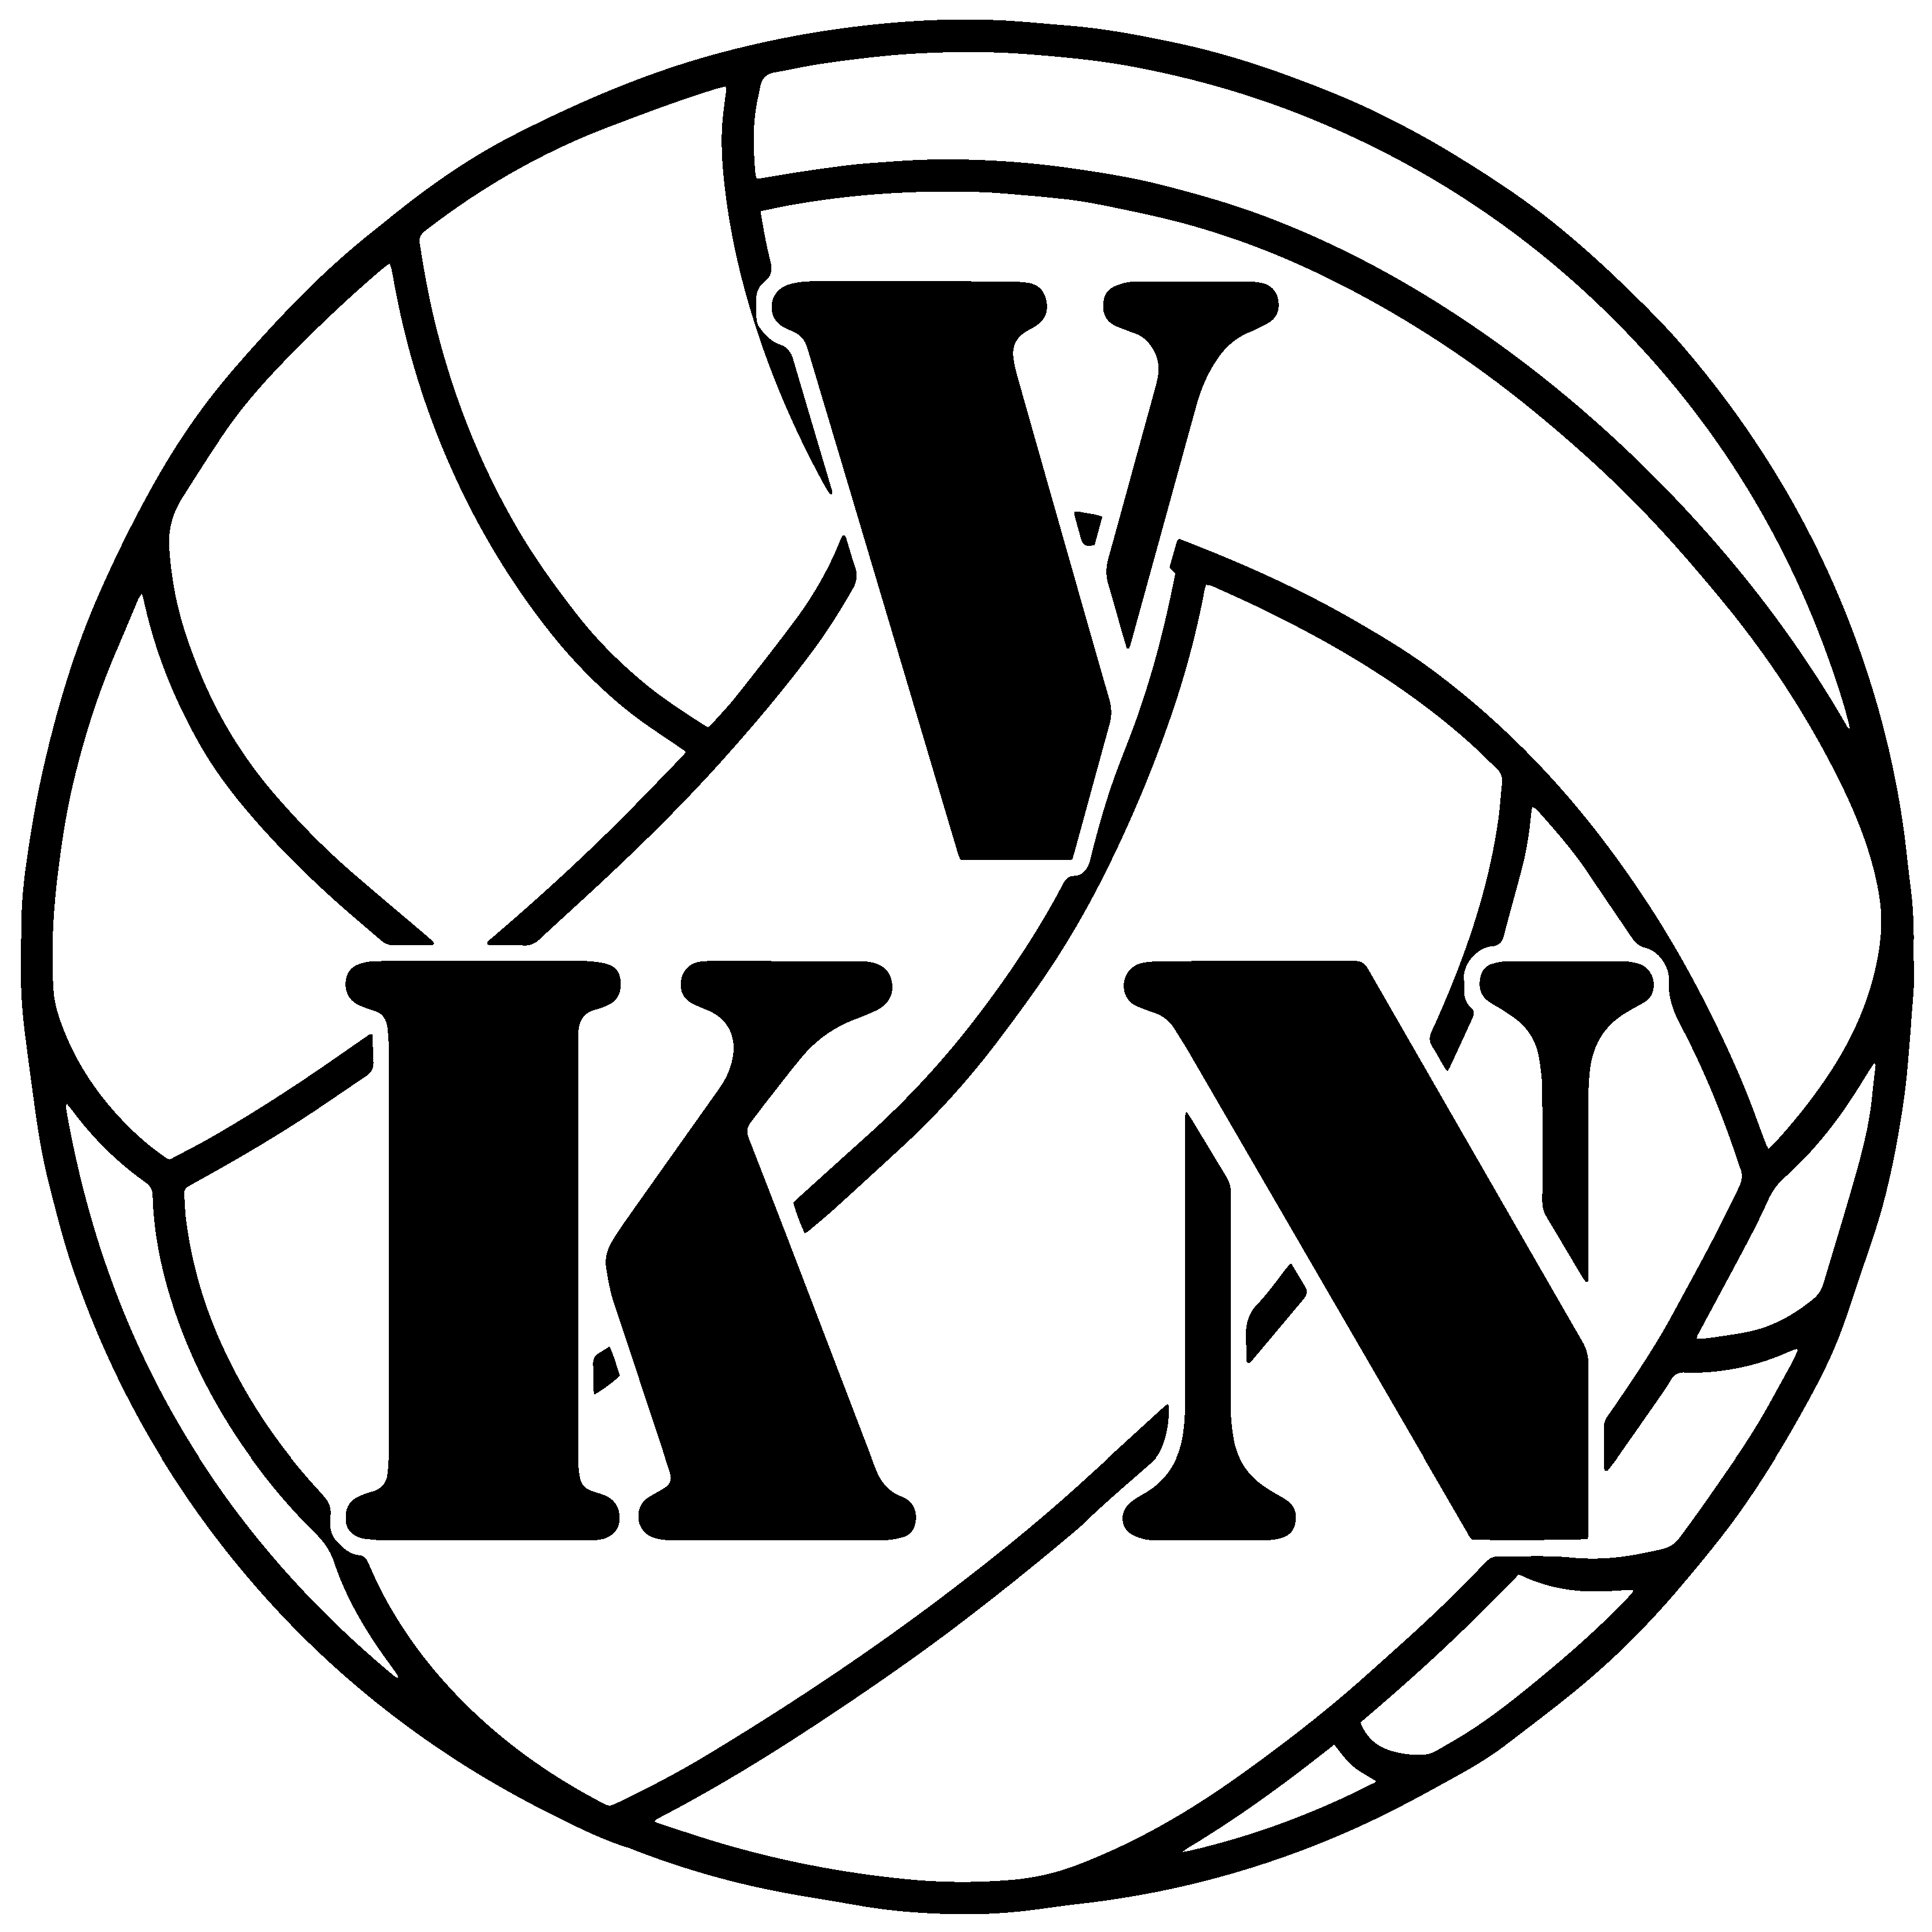 Vkn-logo-sort-streg